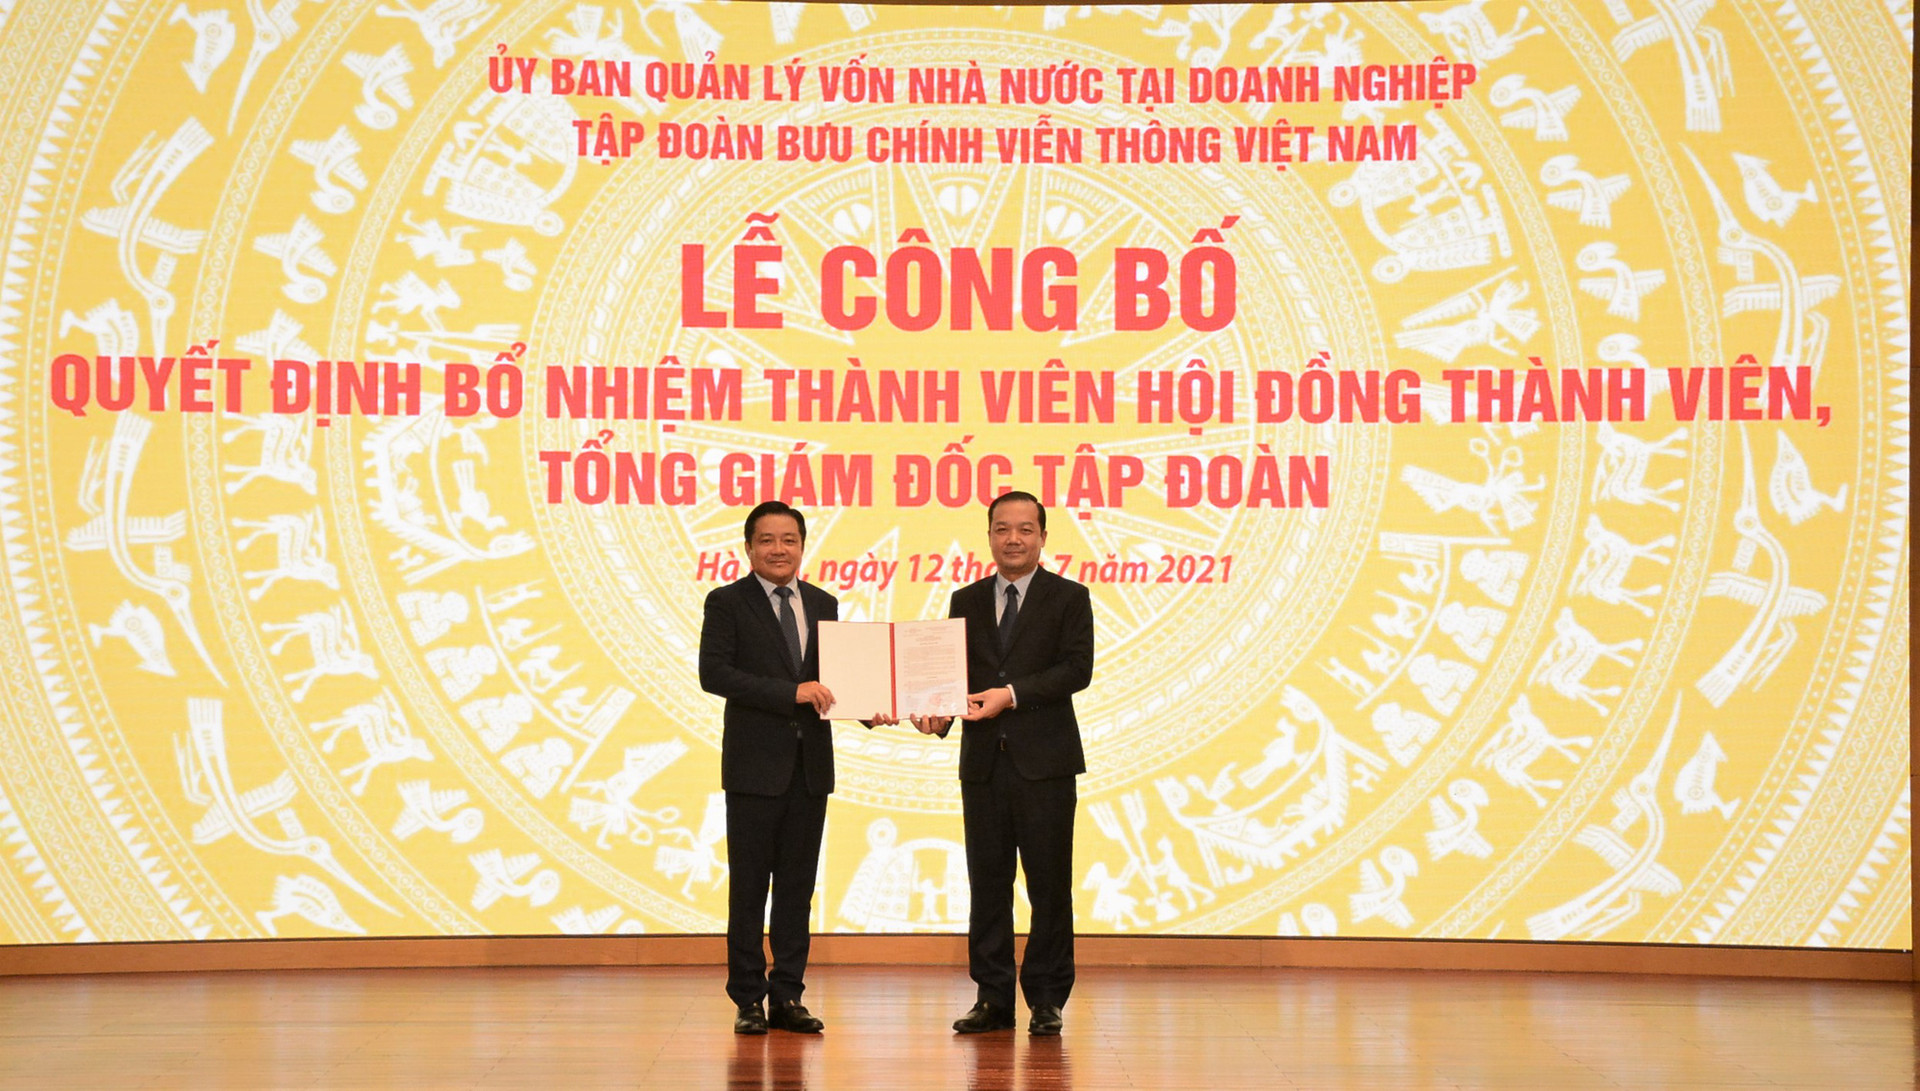 Tân TGĐ VNPT: chuyển mình để trở thành Tập đoàn công nghệ cung cấp dịch vụ số hàng đầu tại Việt Nam - Ảnh 1.